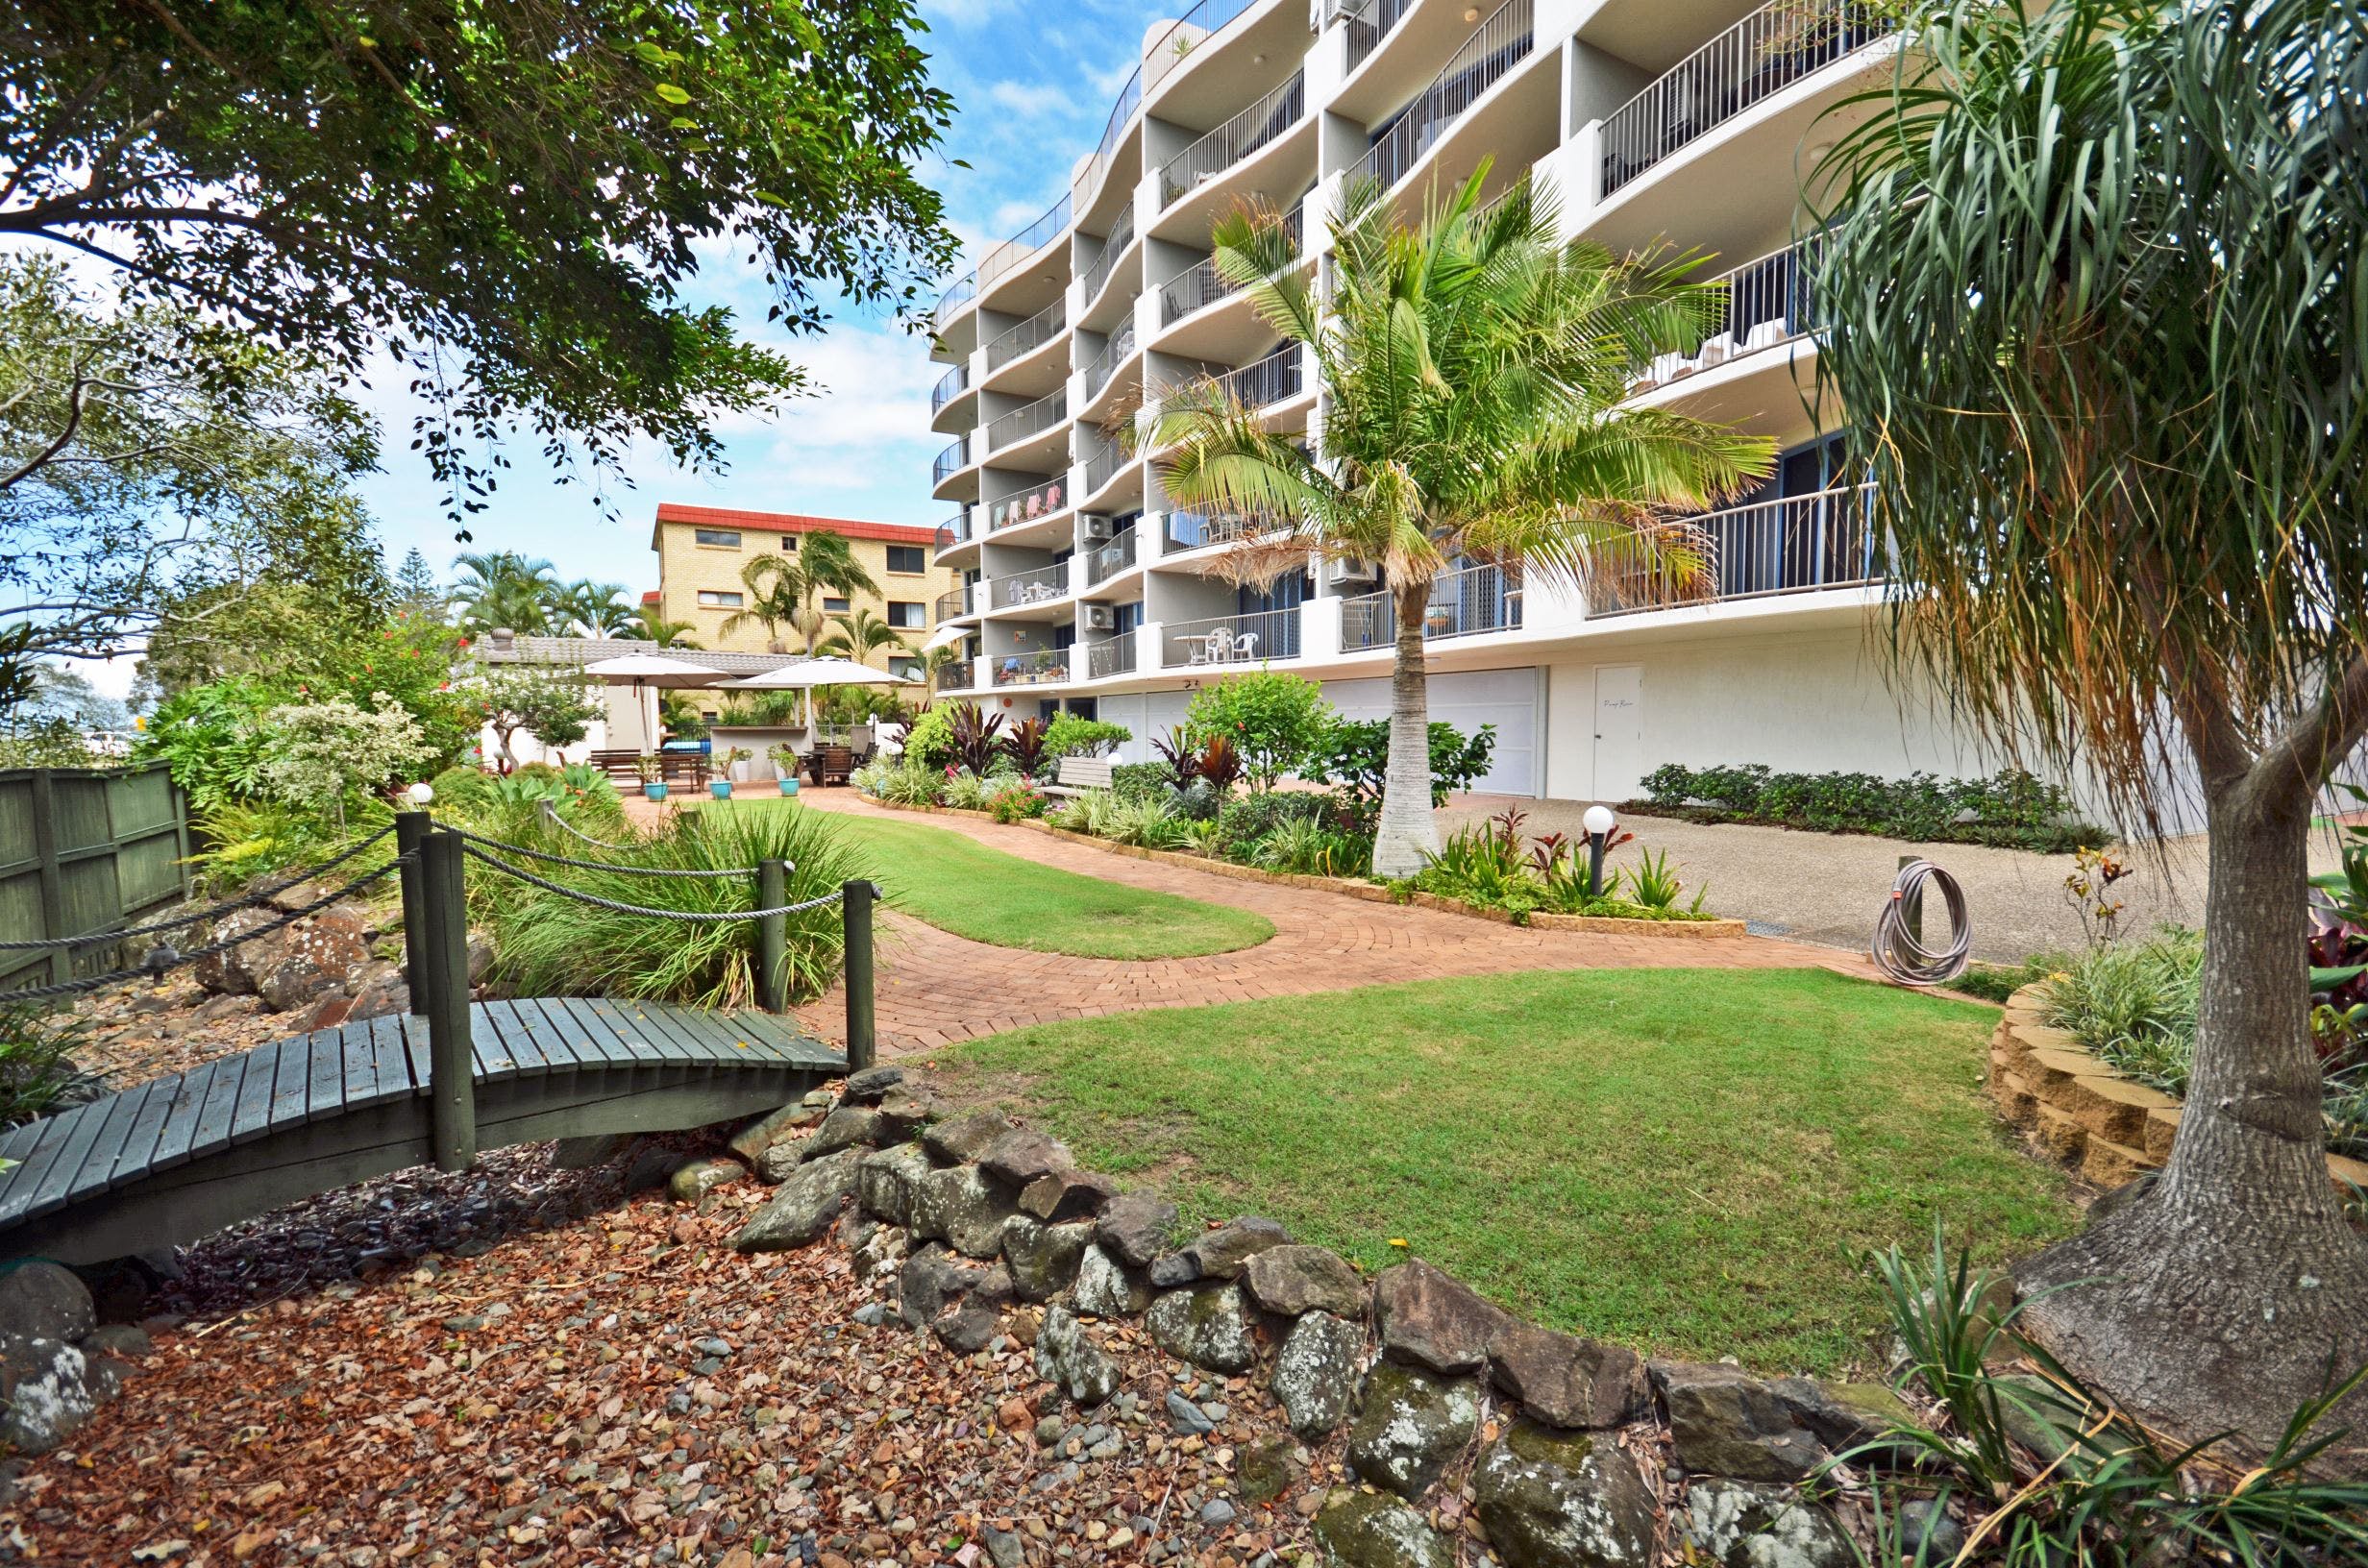 Sails Resort on Golden Beach - Accommodation in Brisbane